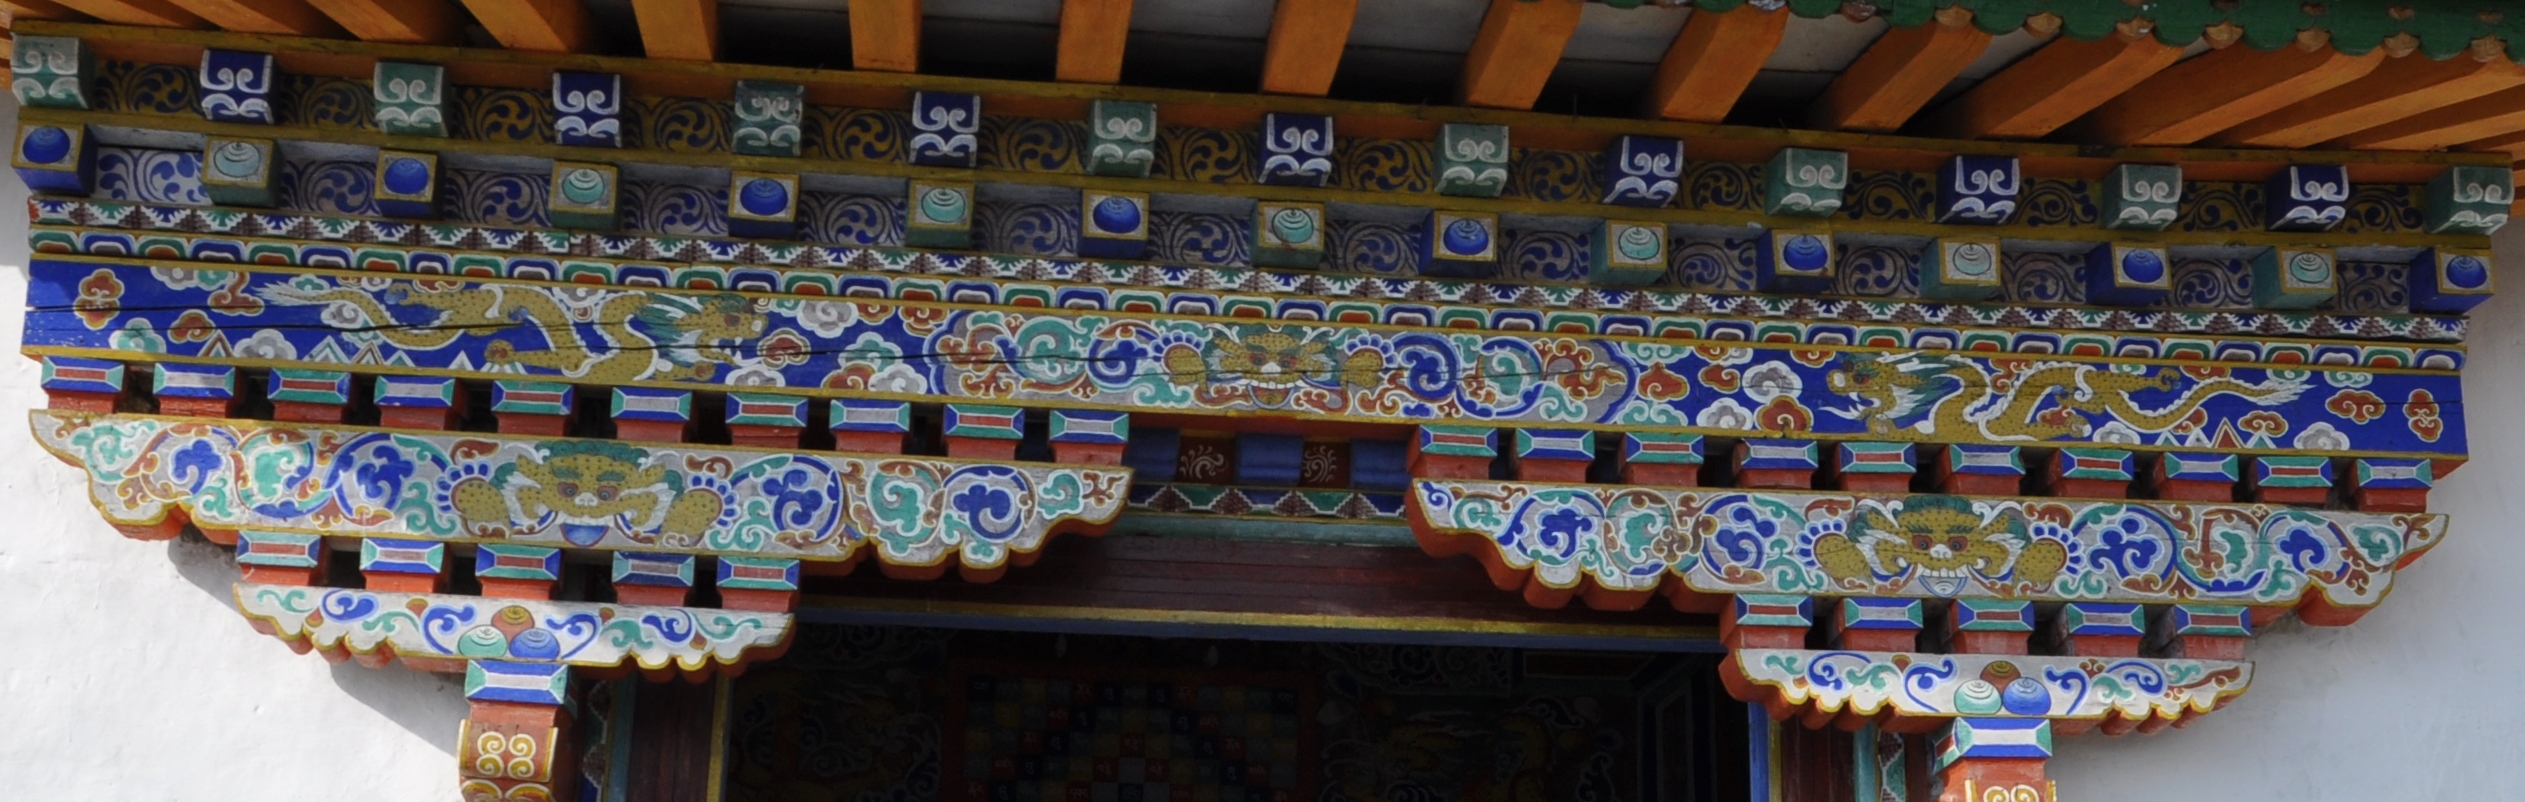 Monastère de Chiwang 05 détails.jpg